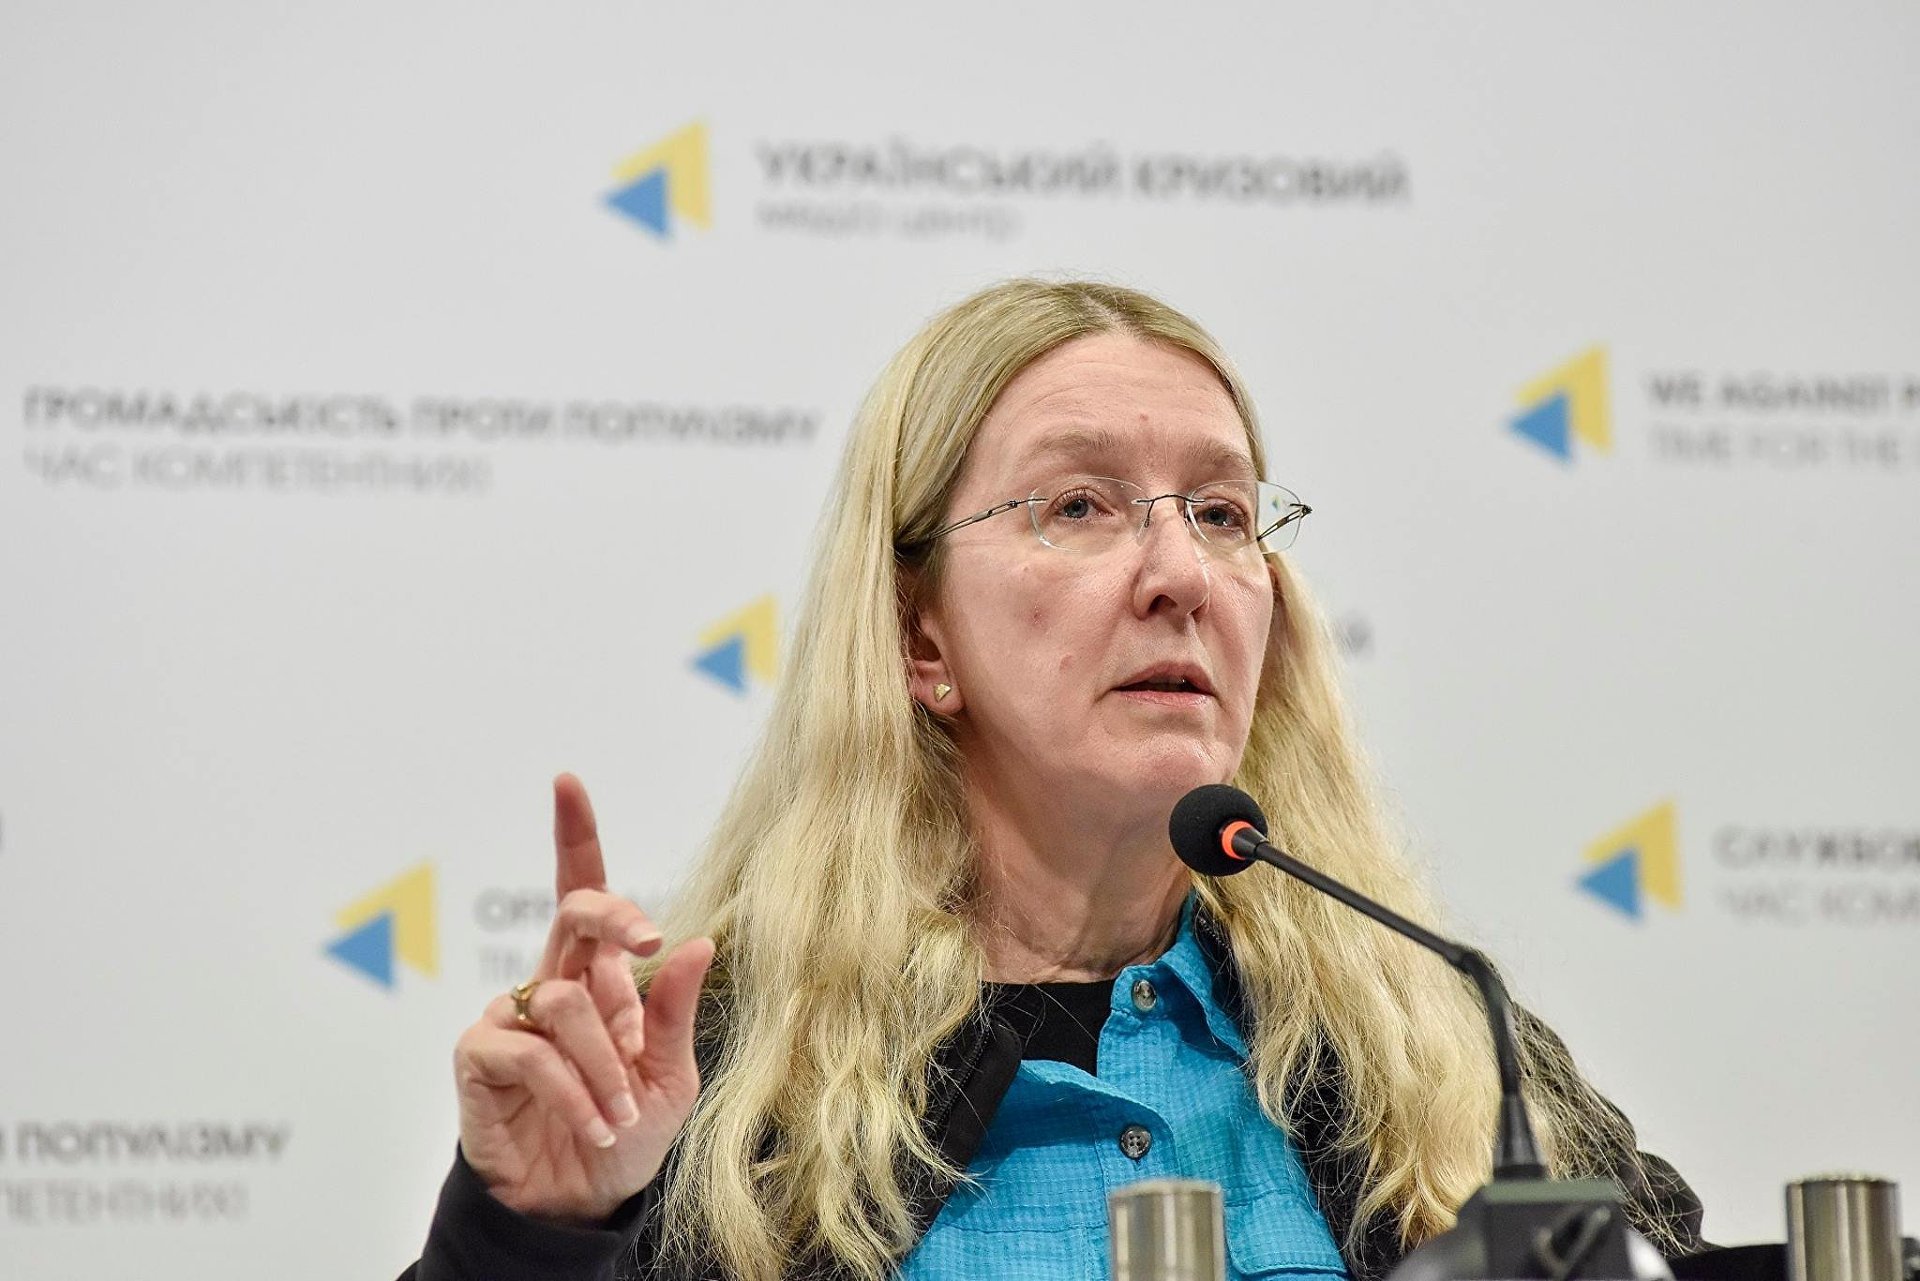 "Они нам очень необходимы", - Ульяна Супрун обратилась к Илону Маску с призывом отправить аппараты ИВЛ в Украину, детали